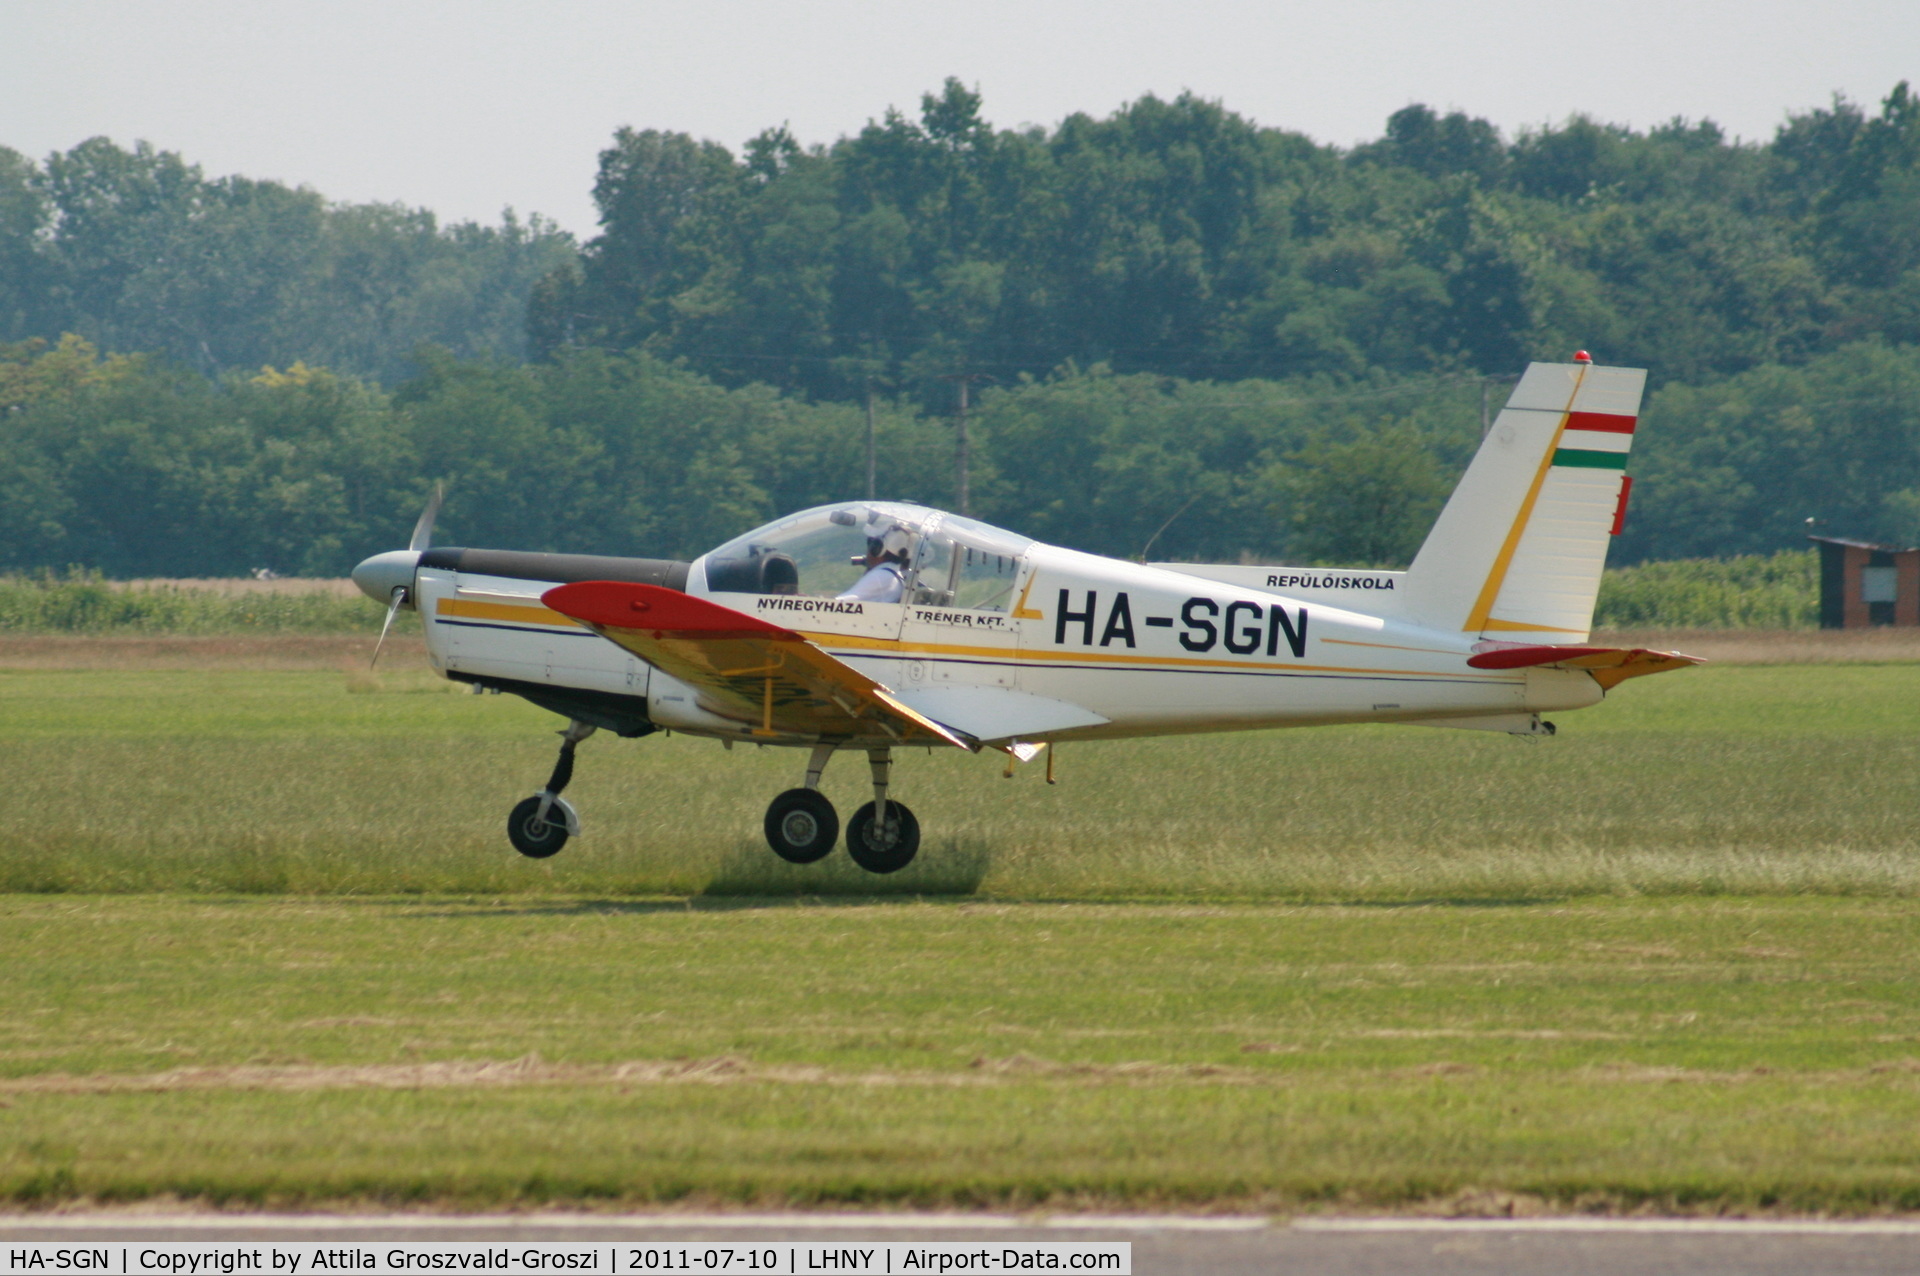 HA-SGN, 1985 Zlin Z-142 C/N 0420, LHNY - Nyiregyháza Airport, Hungary. Airshow 2011